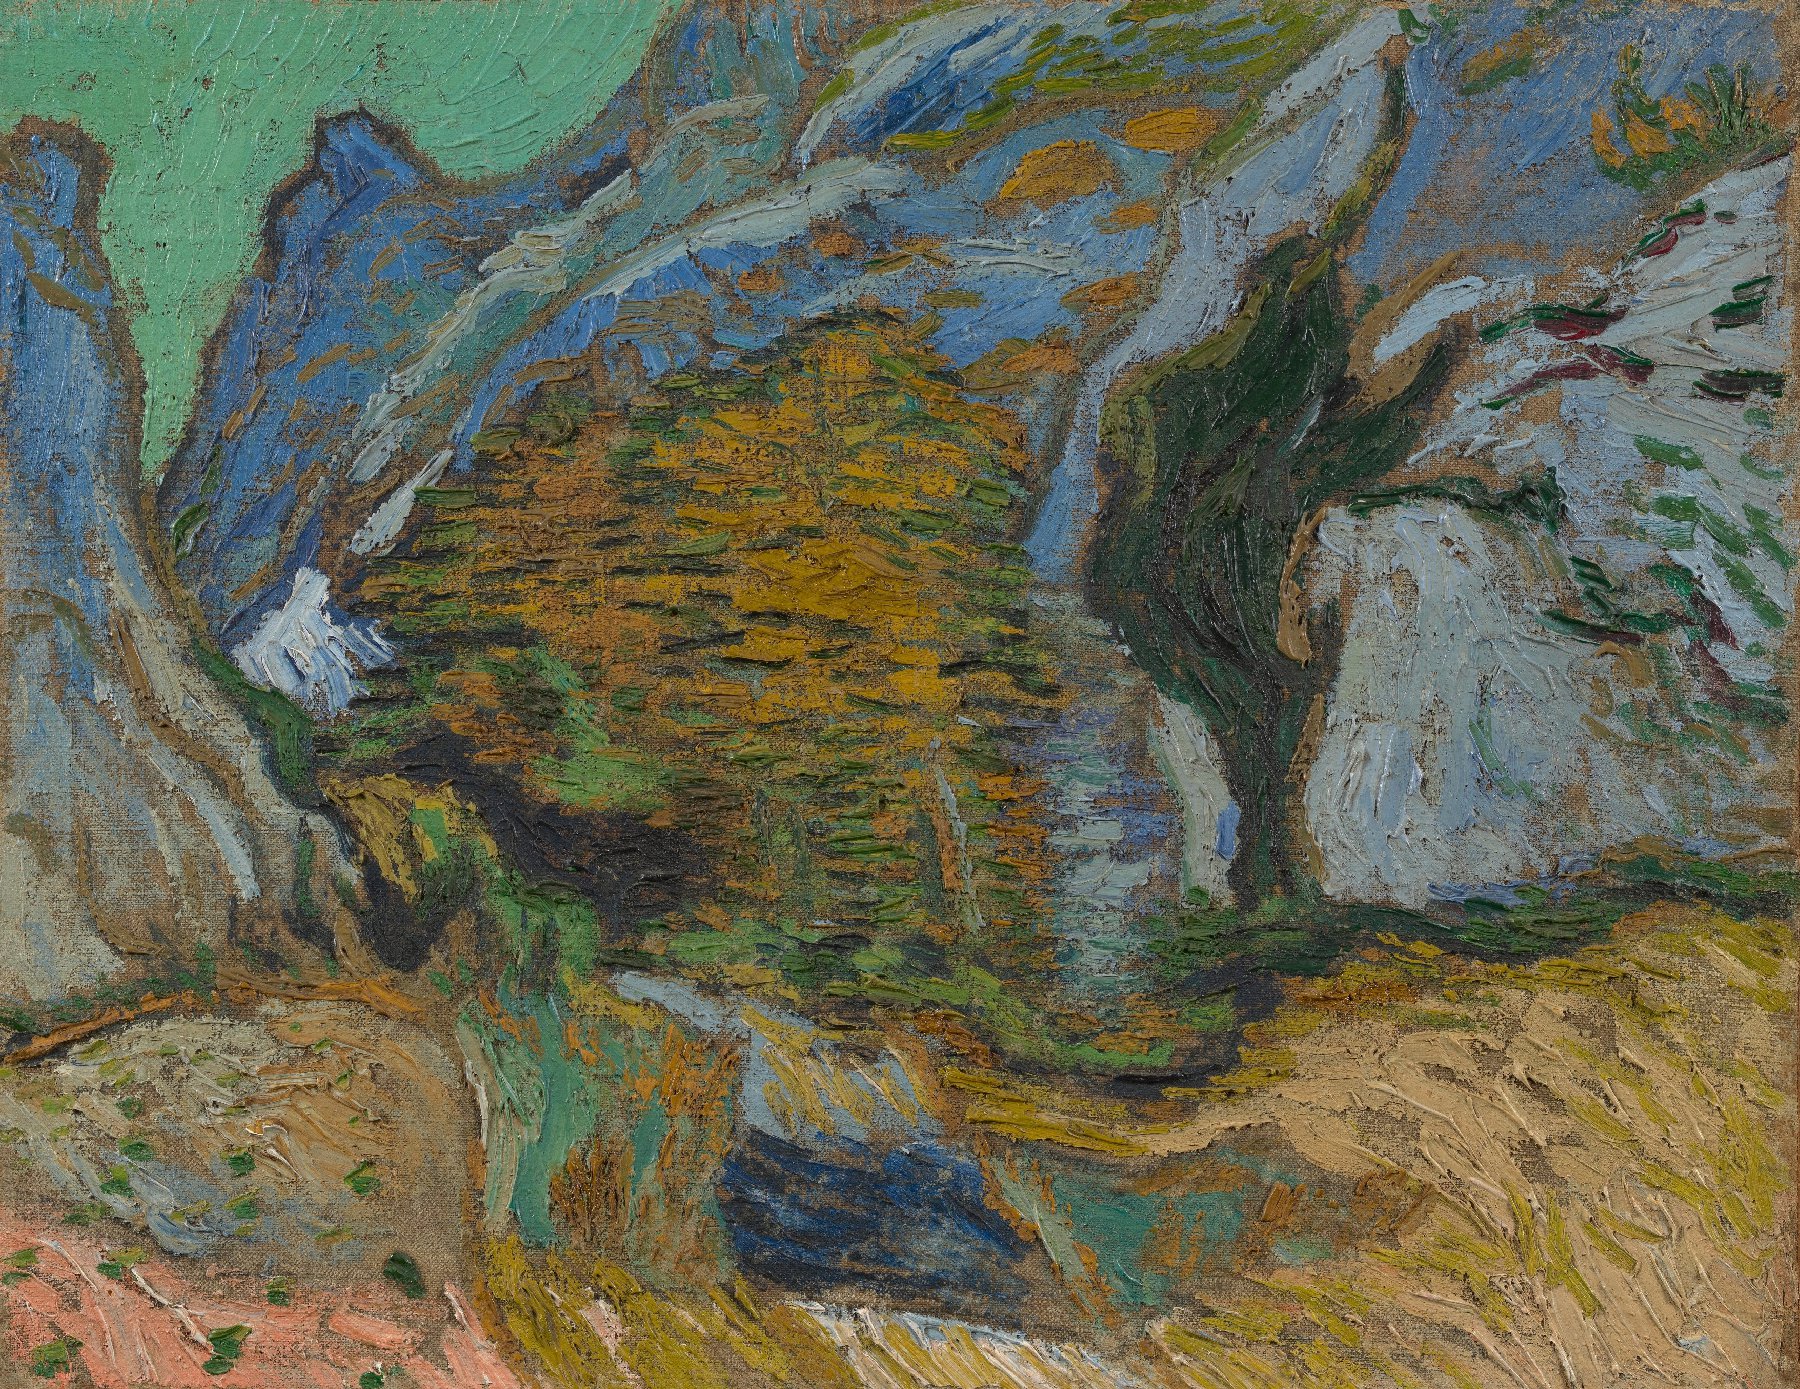 Ravijn met beekje Vincent van Gogh (1853 - 1890), Saint-Rémy-de-Provence, oktober 1889